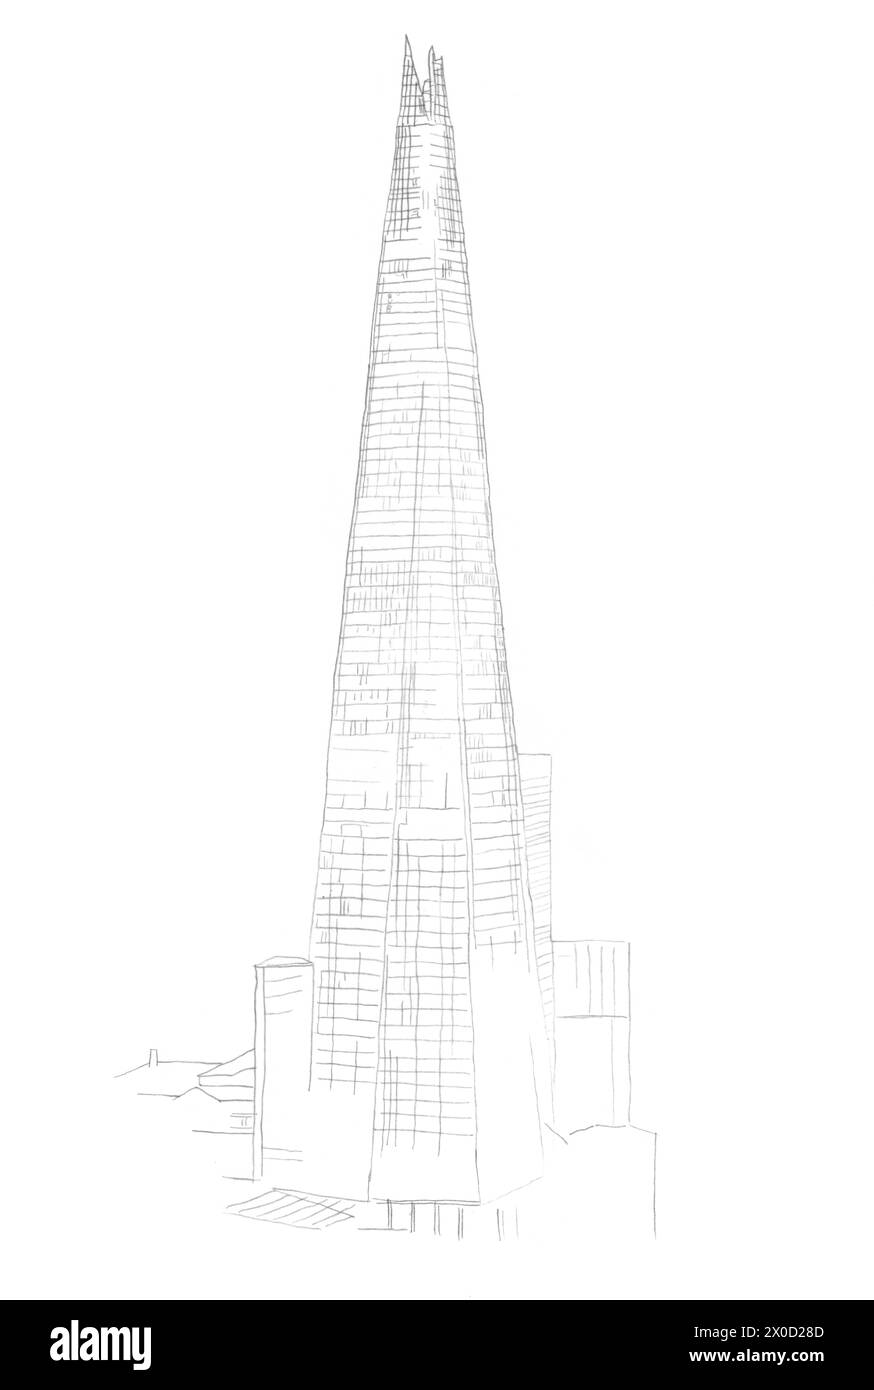 Croquis de dessin au crayon architectural du bâtiment du gratte-ciel Shard à London Bridge, Londres, Royaume-Uni Banque D'Images